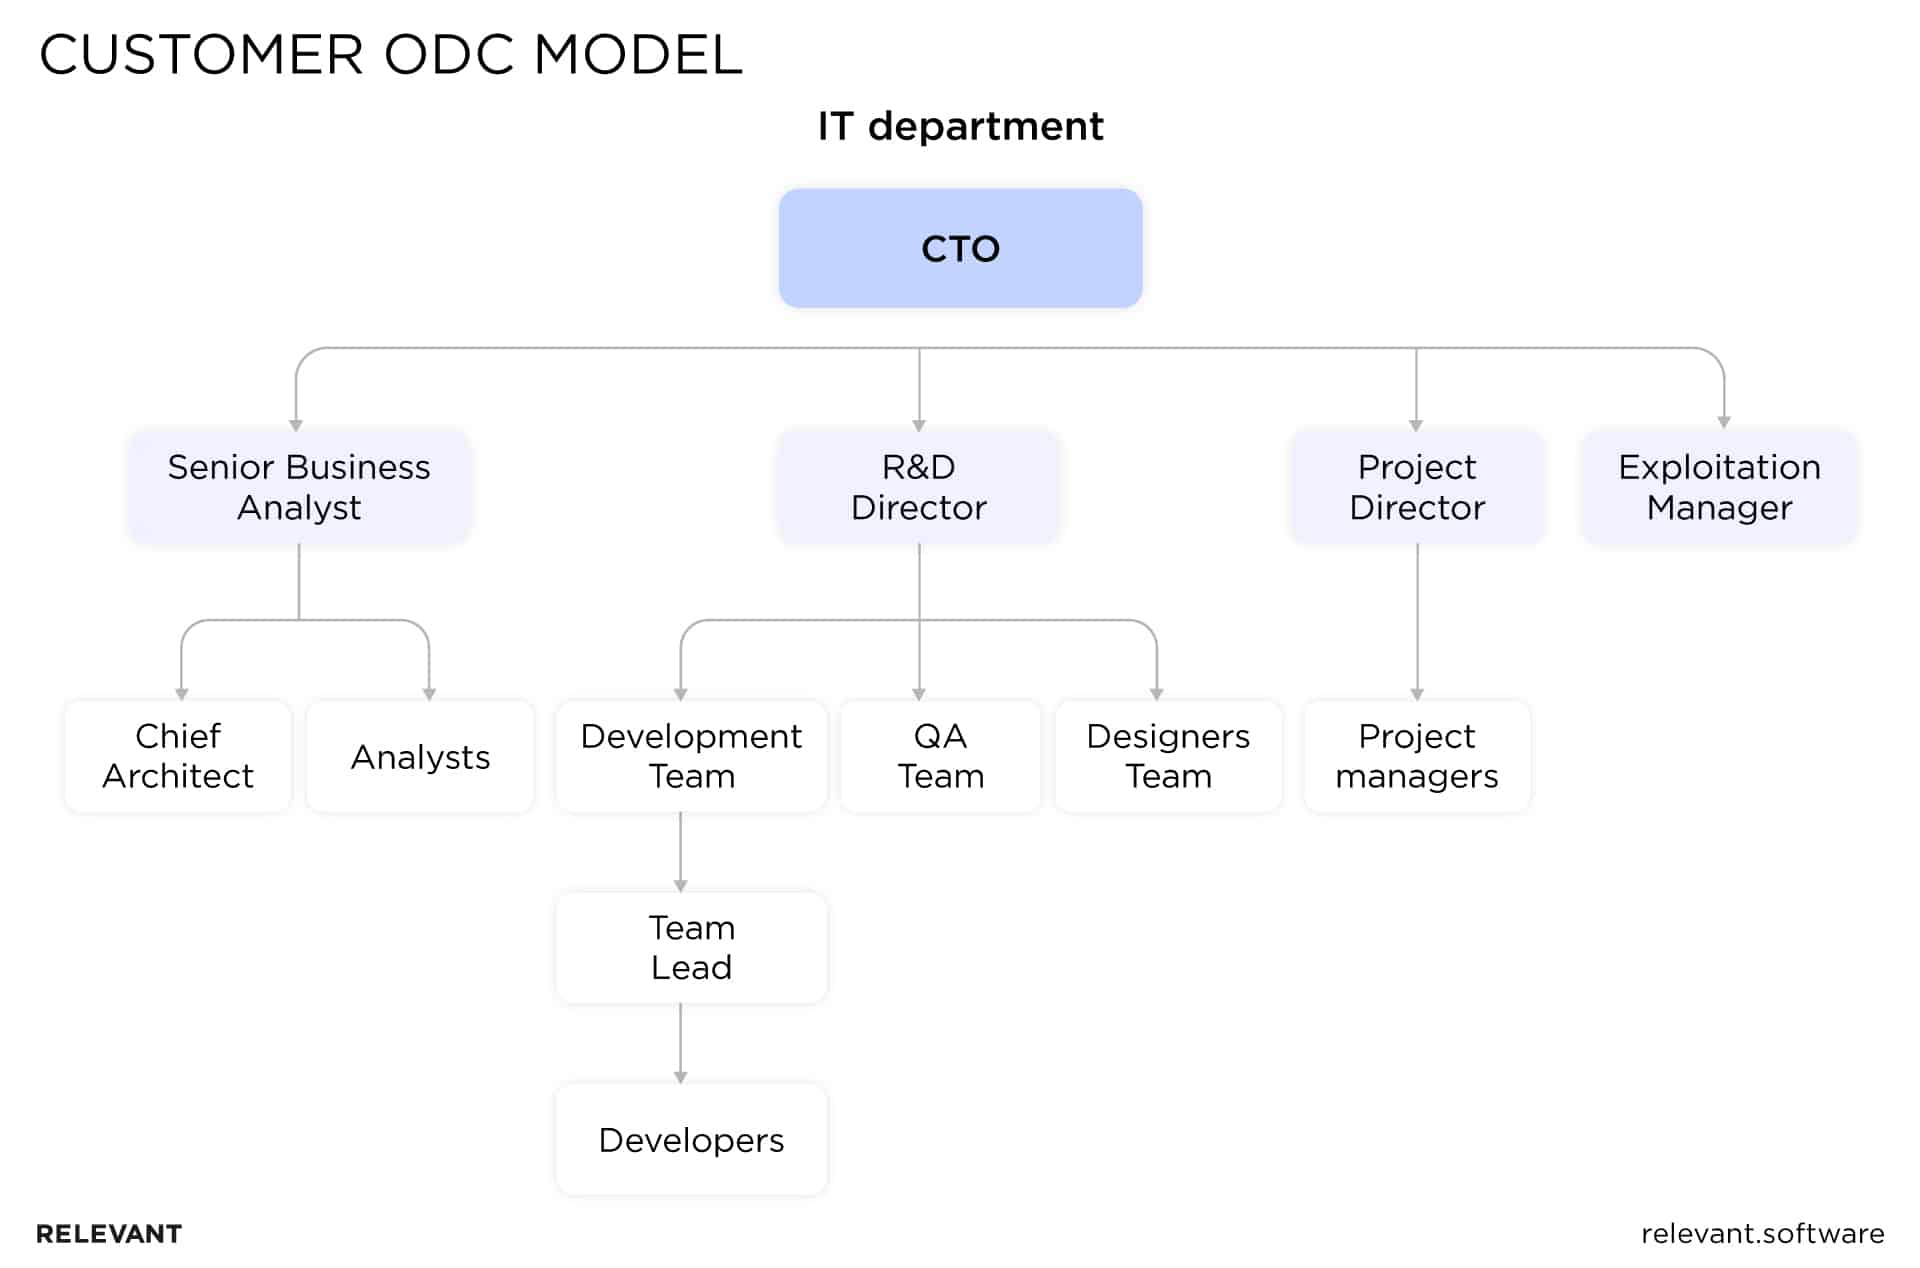 Customer offshore development center model